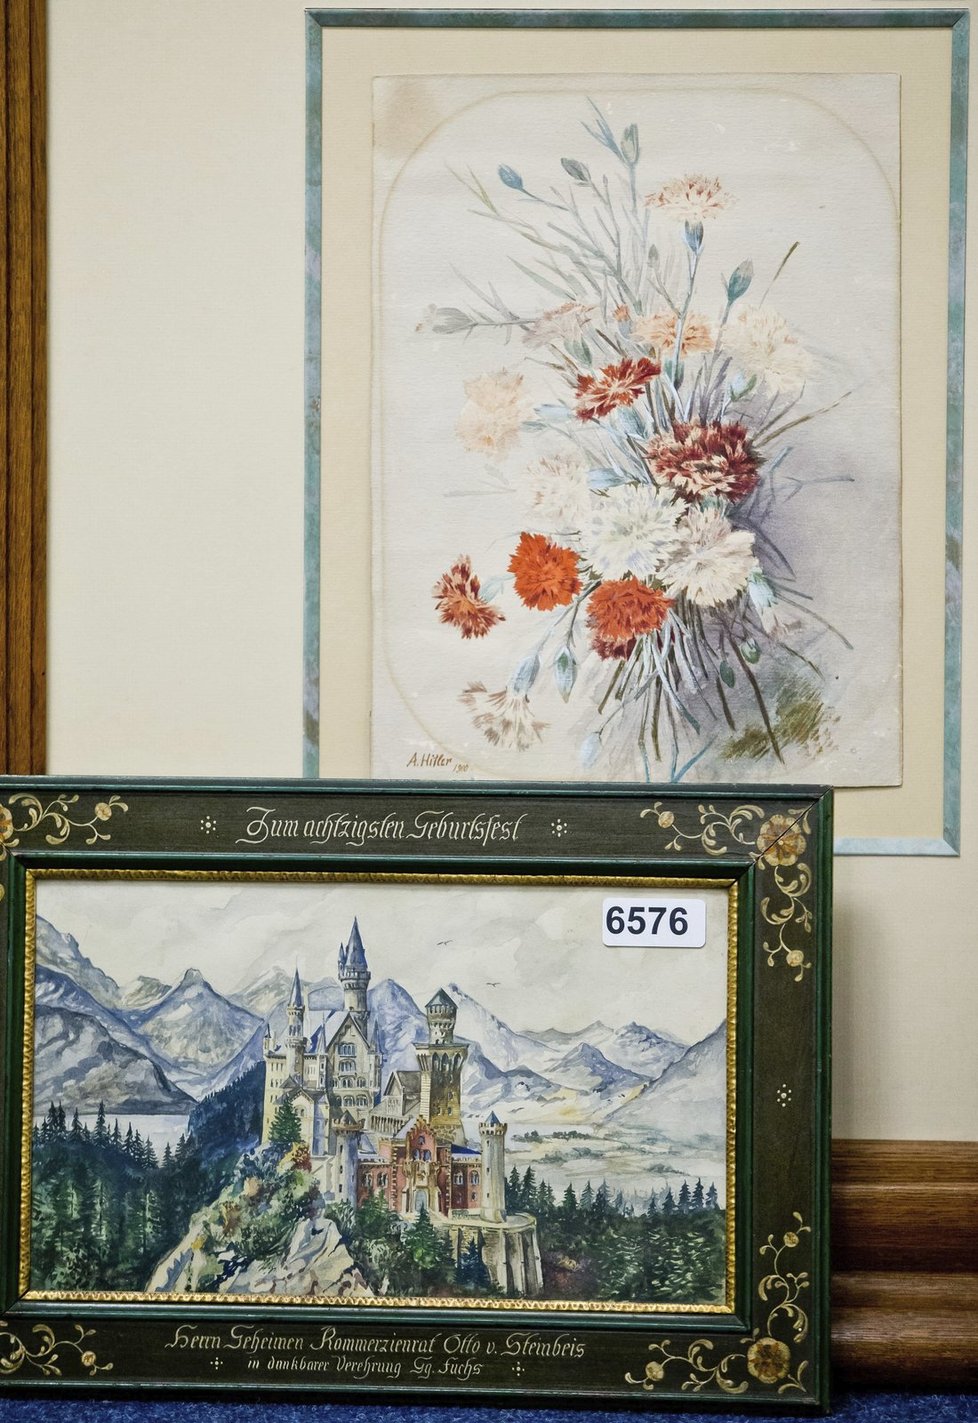 Hitlerovy akvarely se prodaly za více než 10 milionů korun.